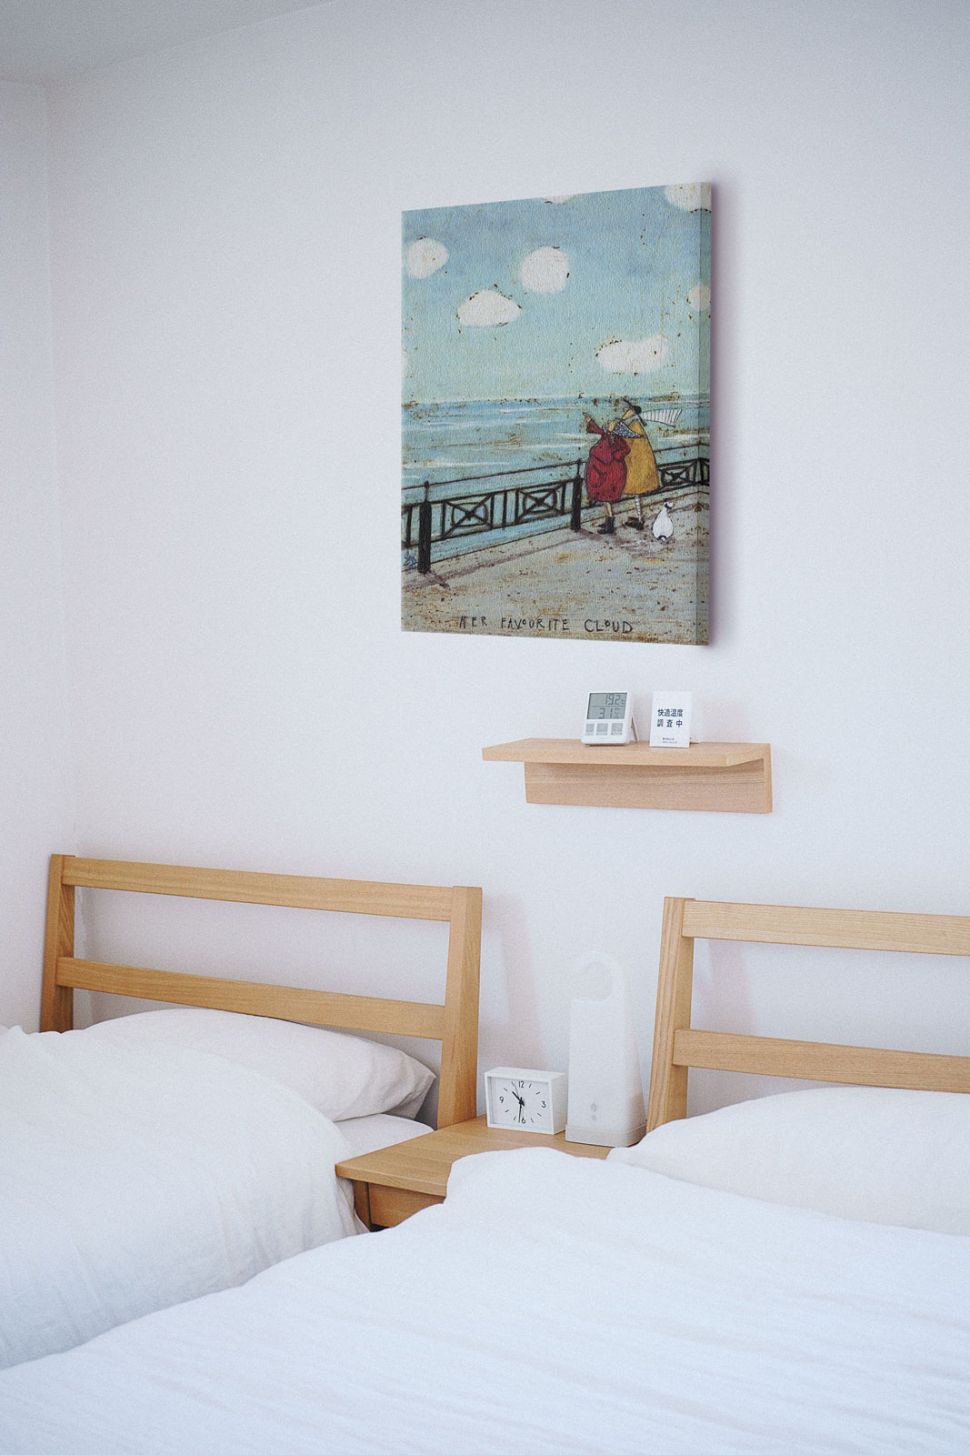 Obraz autorstwa Sam Toft powieszony w pokoju nad dwoma łóżkami z białą pościelą